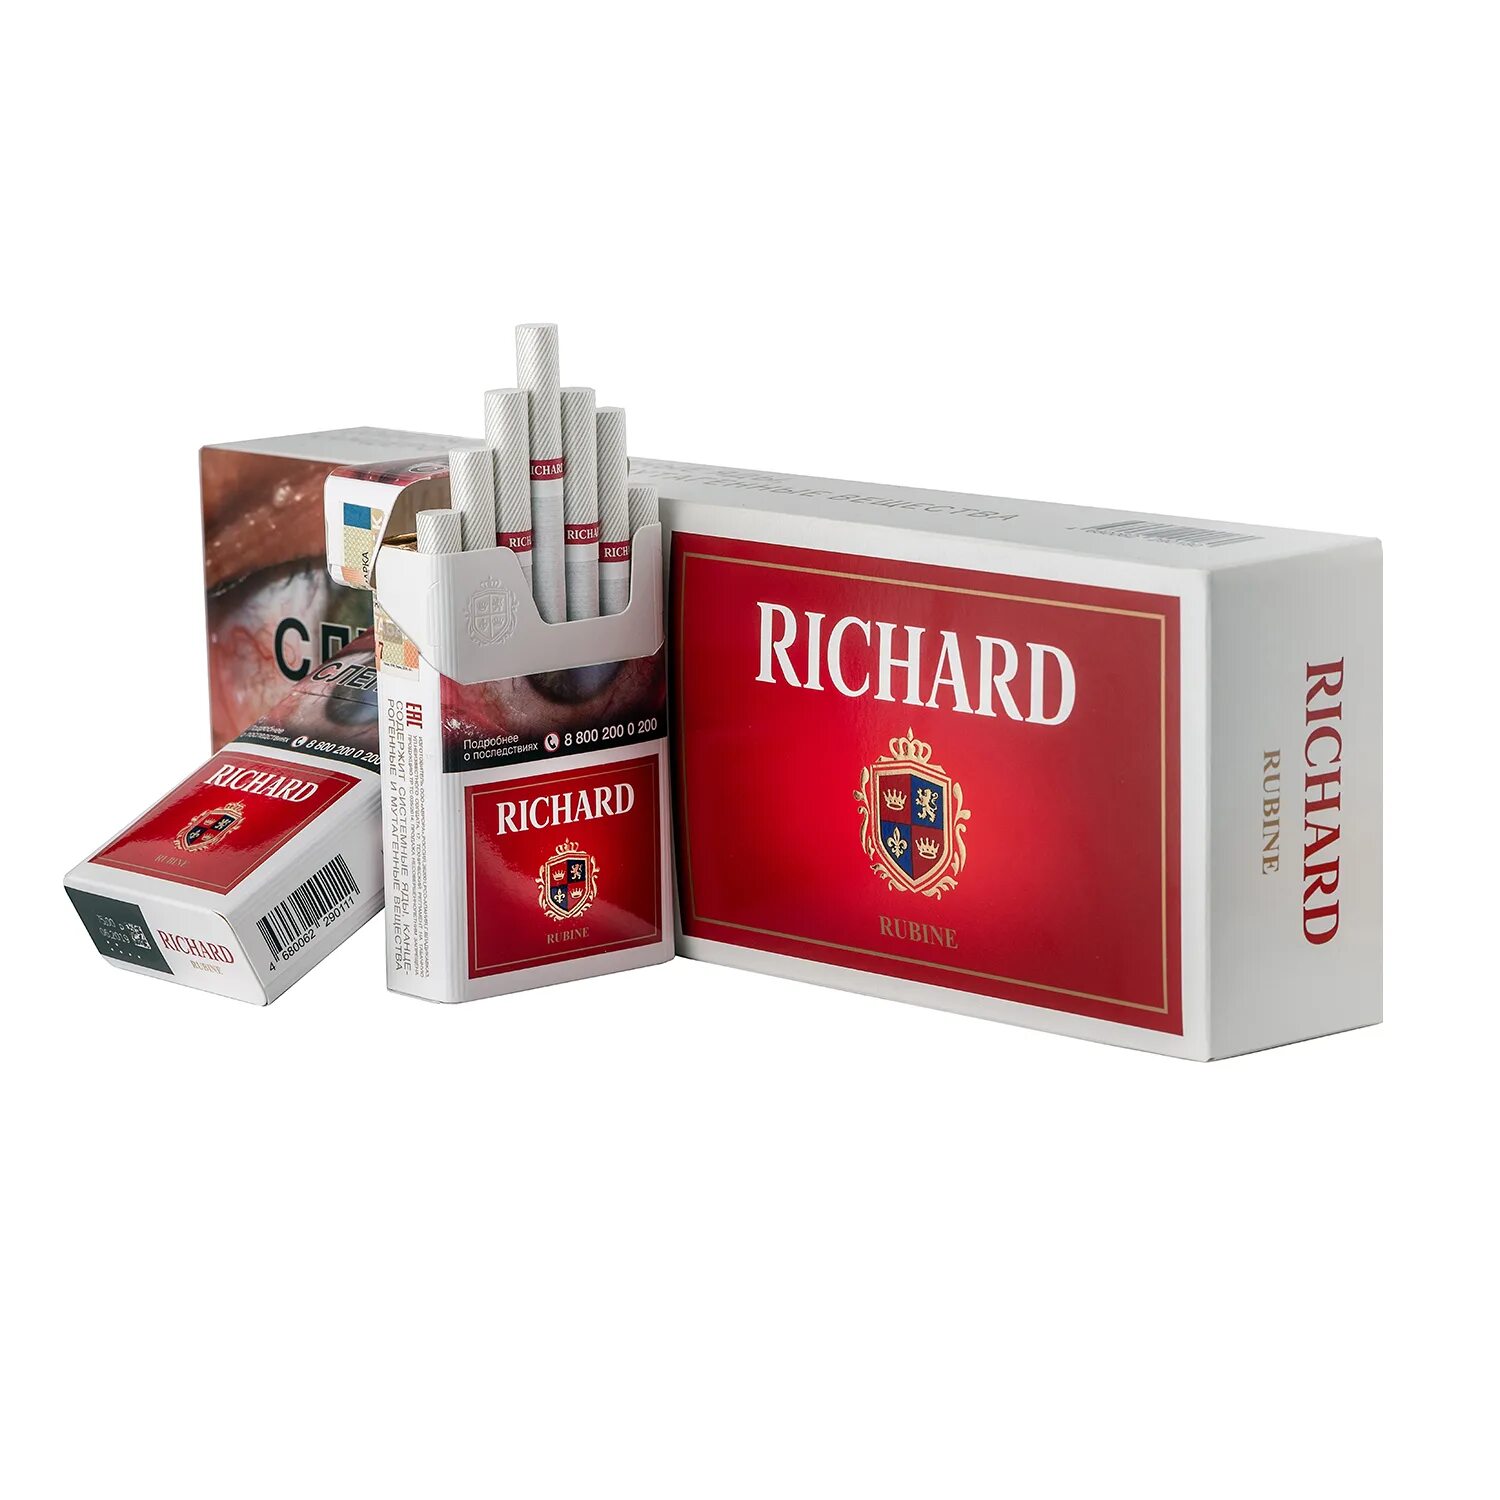 Сигареты купить пепел. Сигареты Richard Rubine. Сигареты Richard Rubine Compact. Richard Rubine коричневые сигареты. Richard Brilliant Compact сигареты.